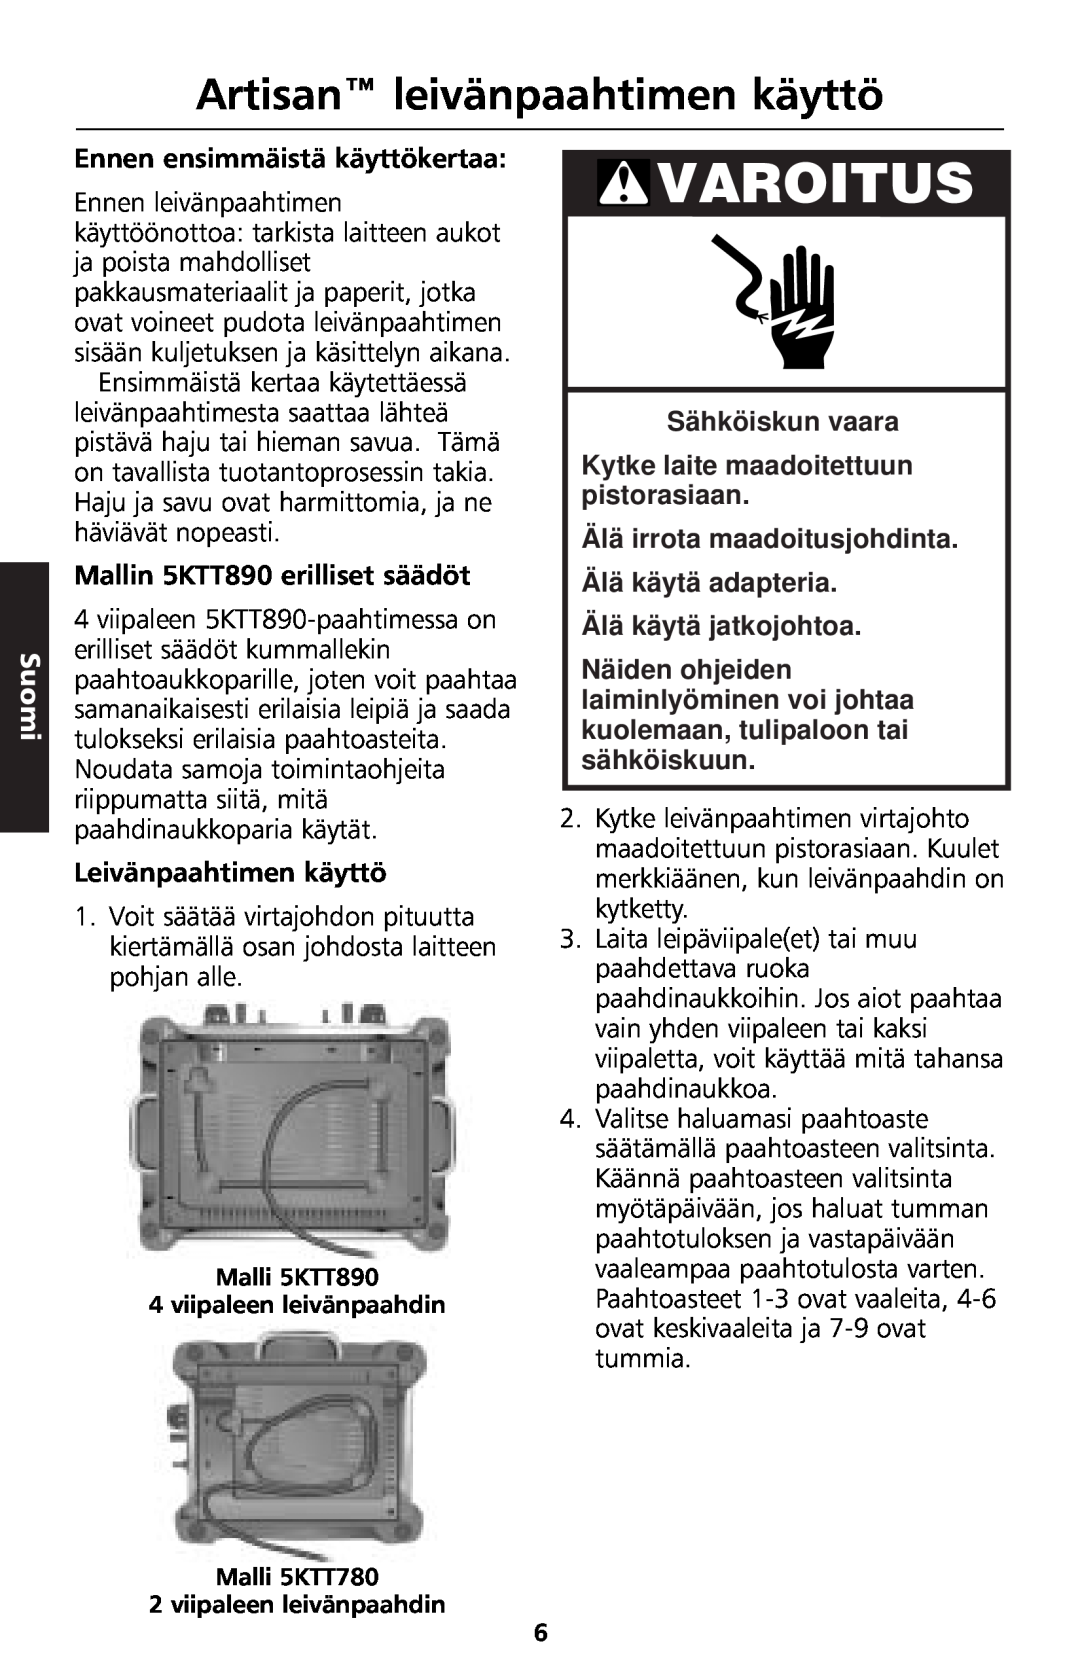 KitchenAid 5KTT890 manual Artisan leivänpaahtimen käyttö, Varoitus, Suomi, Sähköiskun vaara, Älä käytä jatkojohtoa 